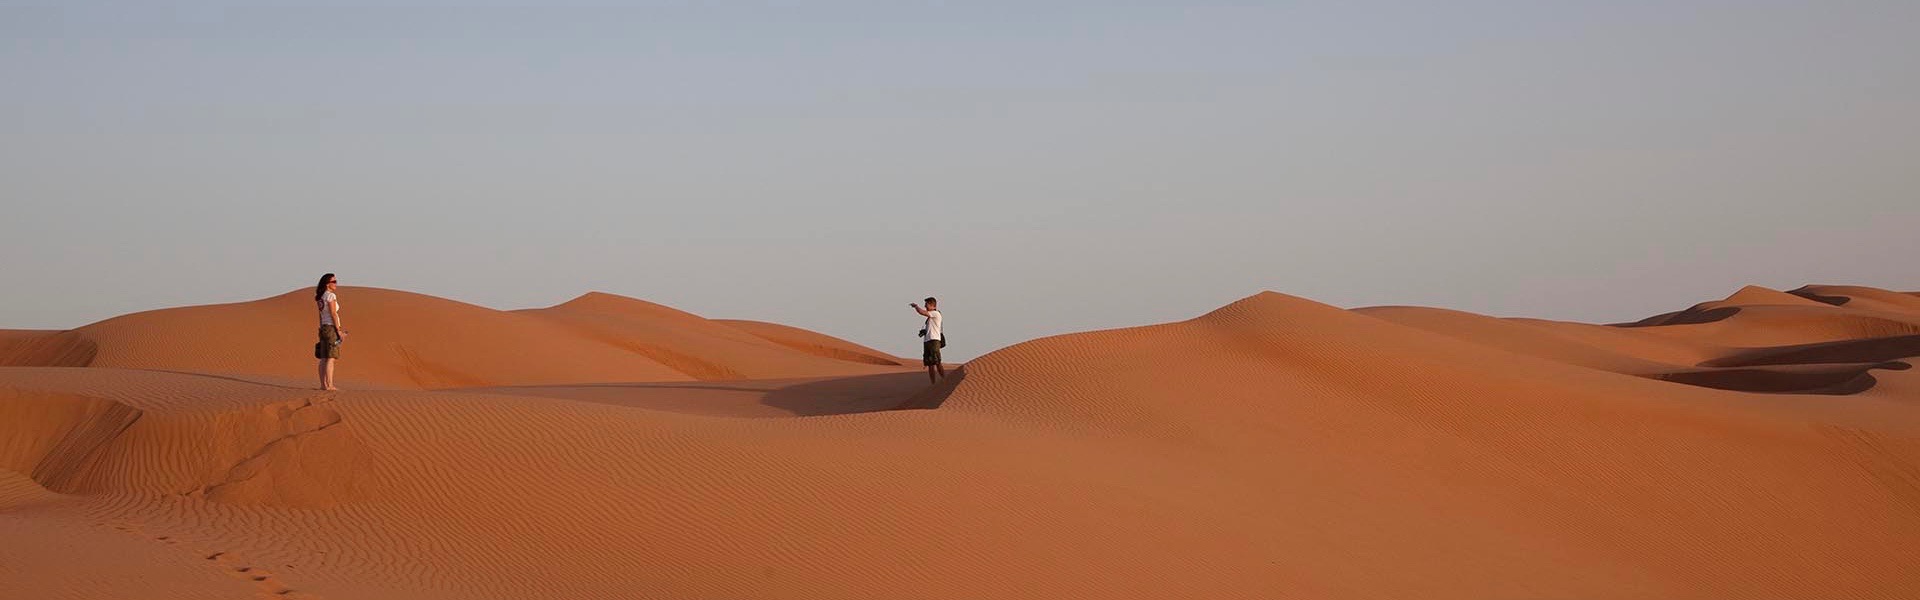 Sand Dunes in Oman